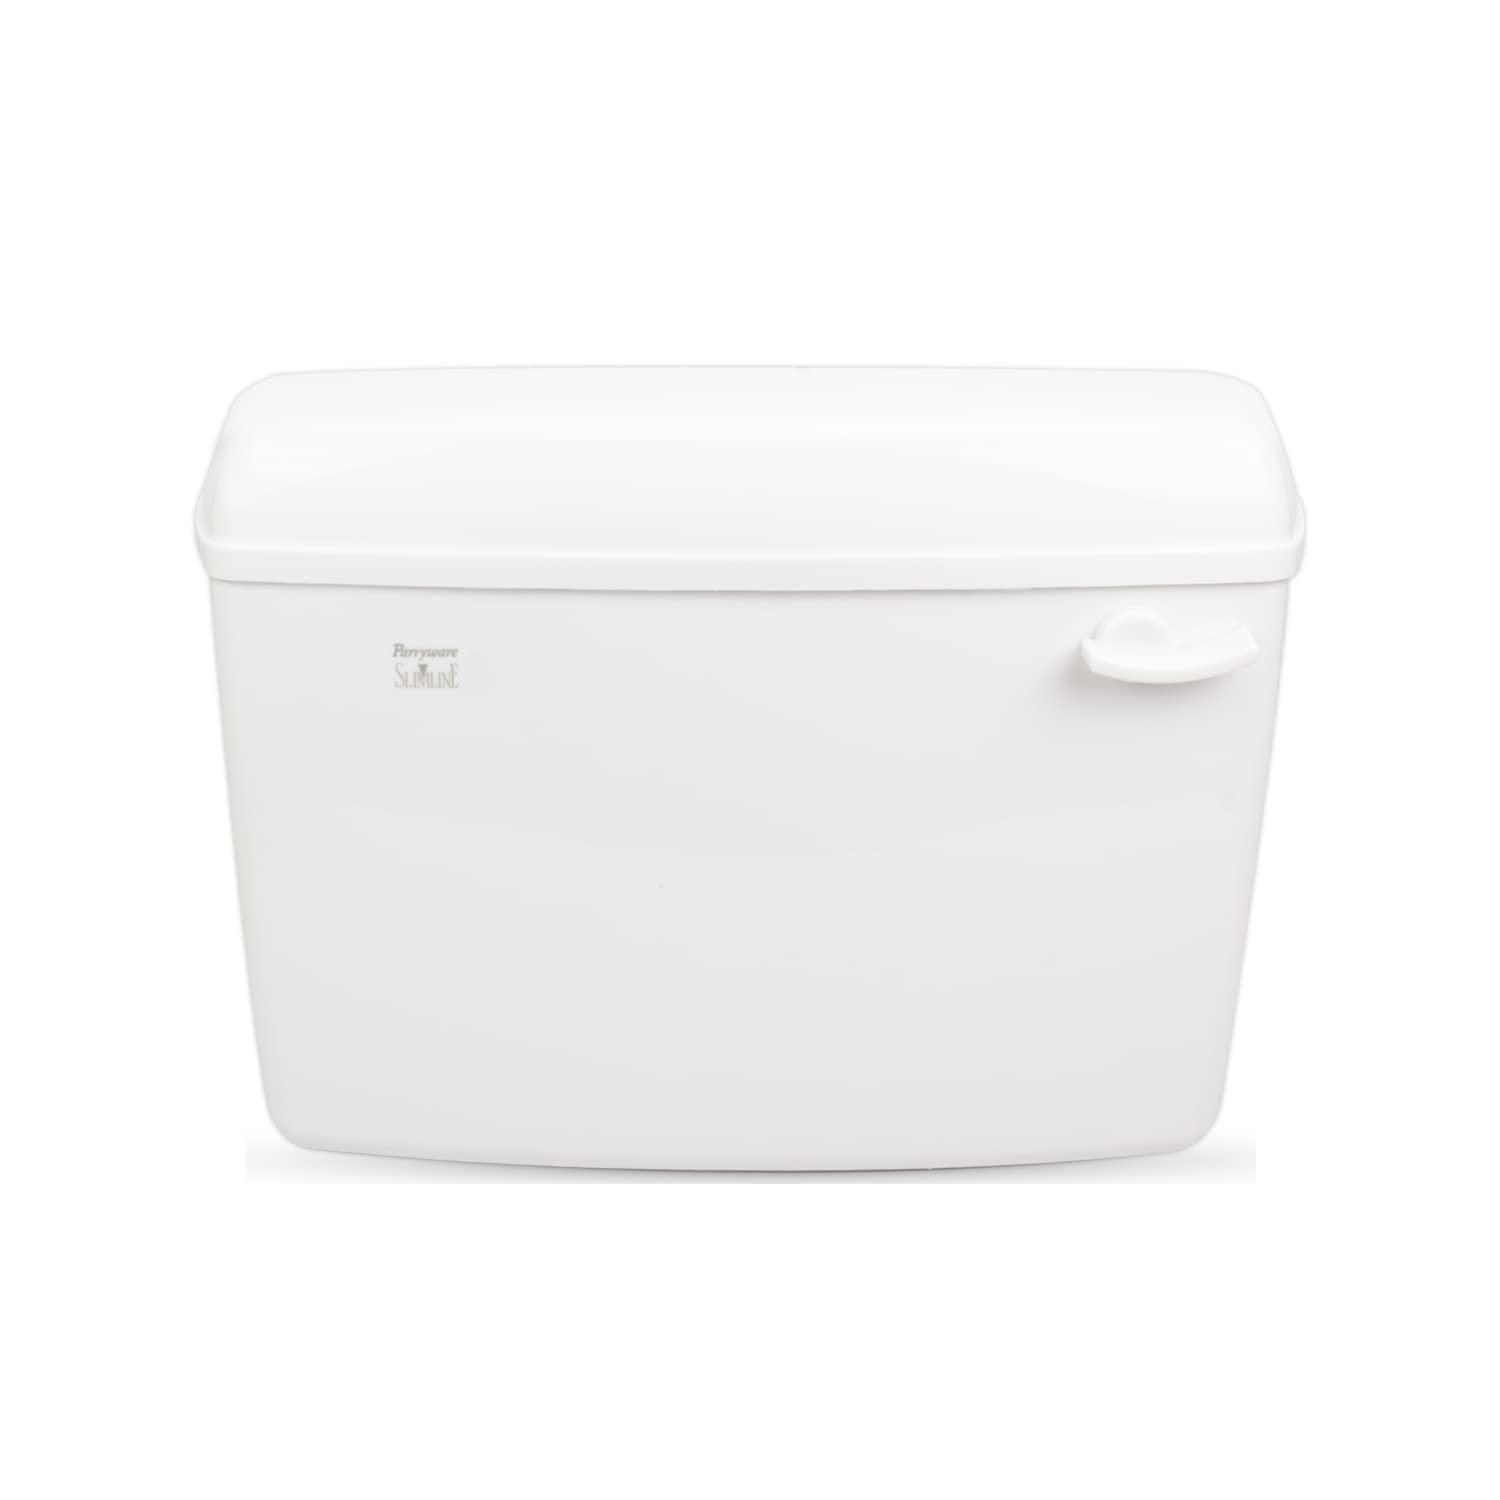 Parryware Slimline Standard Single Flush Cistern - E82971C (White)